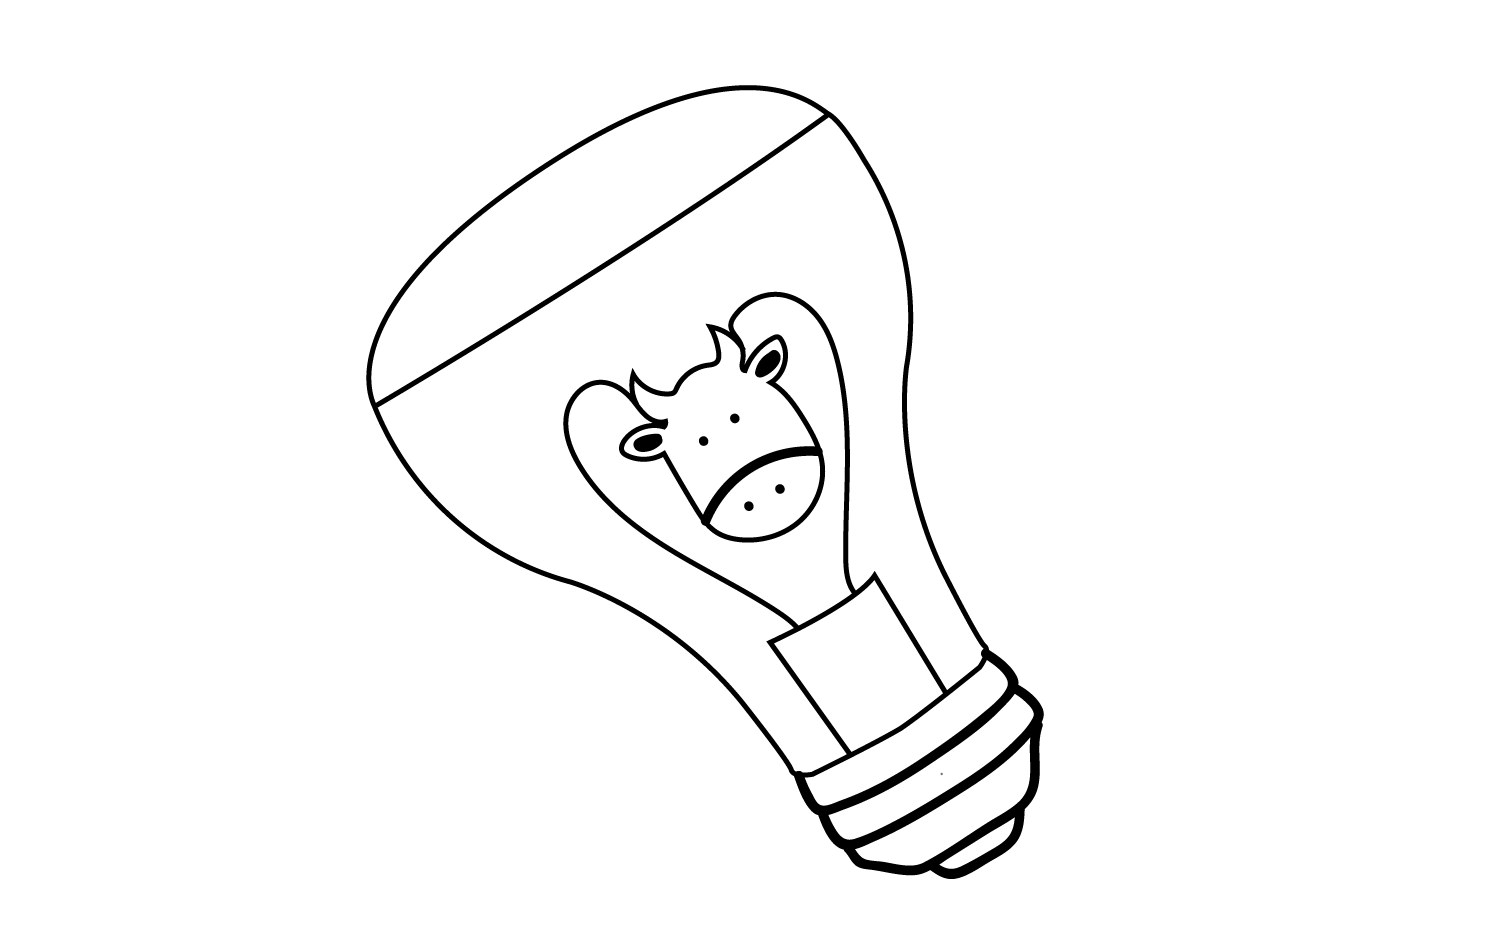 Illustration of Cow inside a lightbulb.